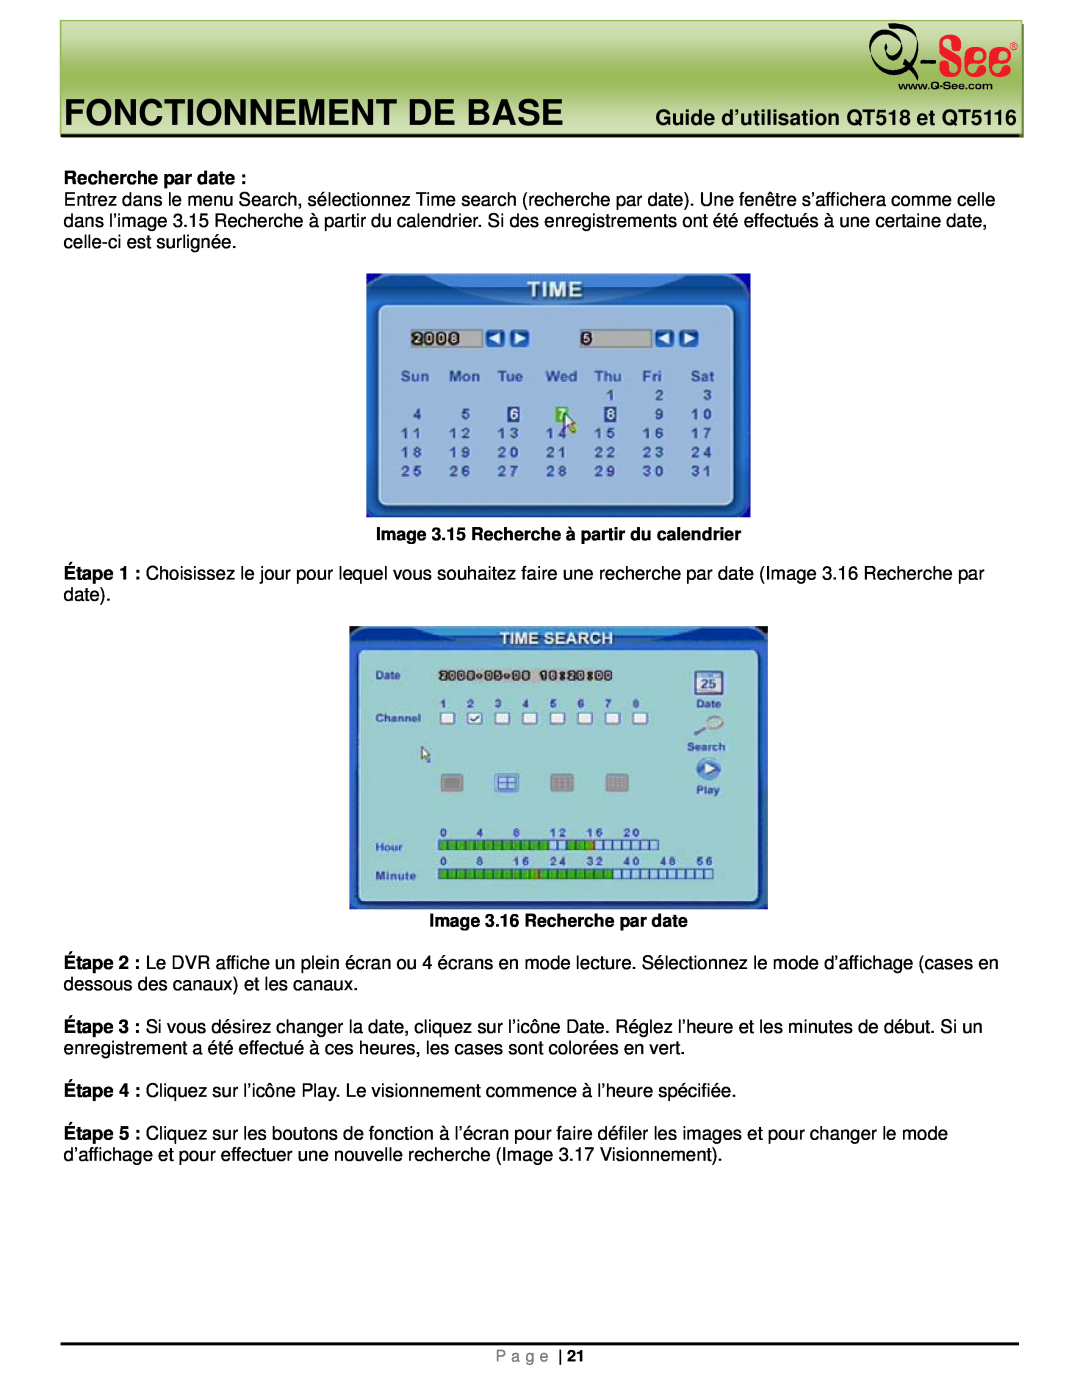 Q-See manual Fonctionnement De Base, Guide d’utilisation QT518 et QT5116, Image 3.16 Recherche par date 